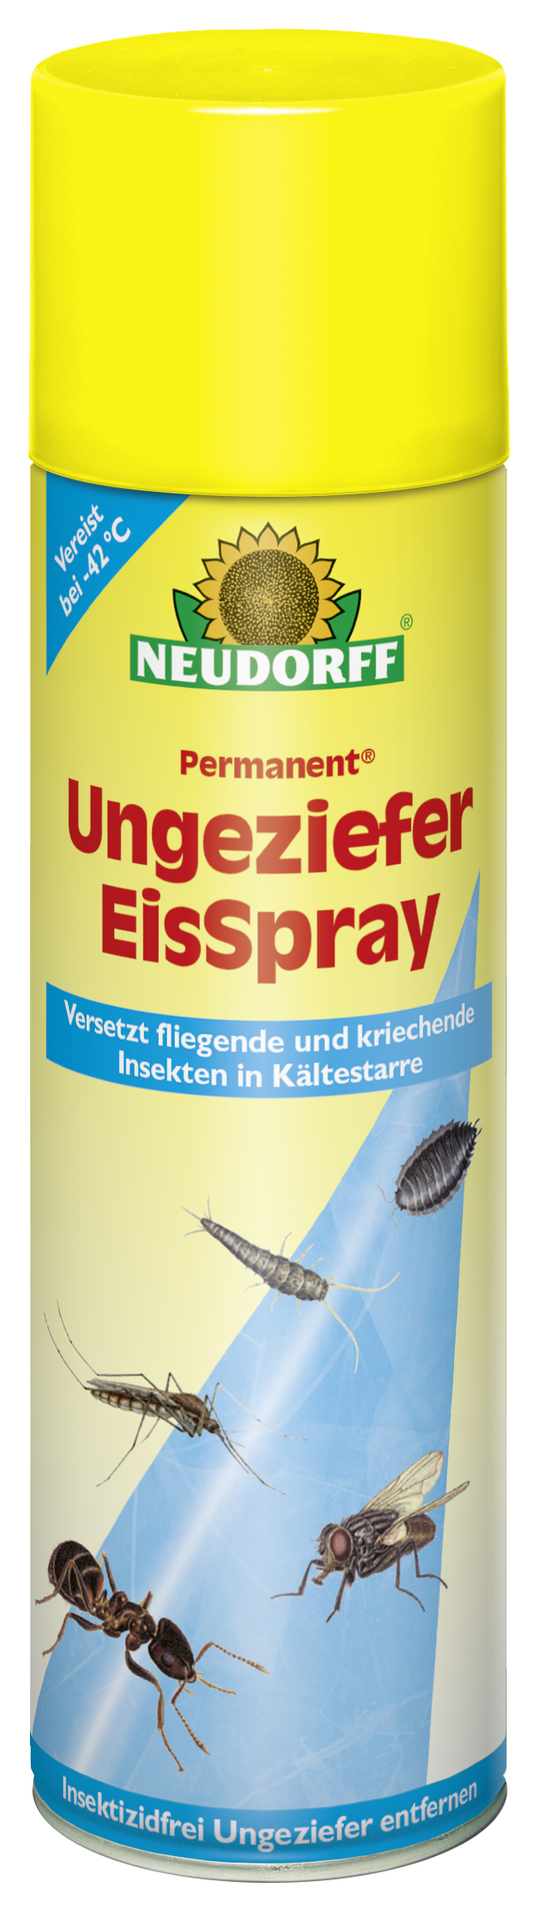 W. Neudorff GmbH KG Permanent Ungeziefer EisSpray